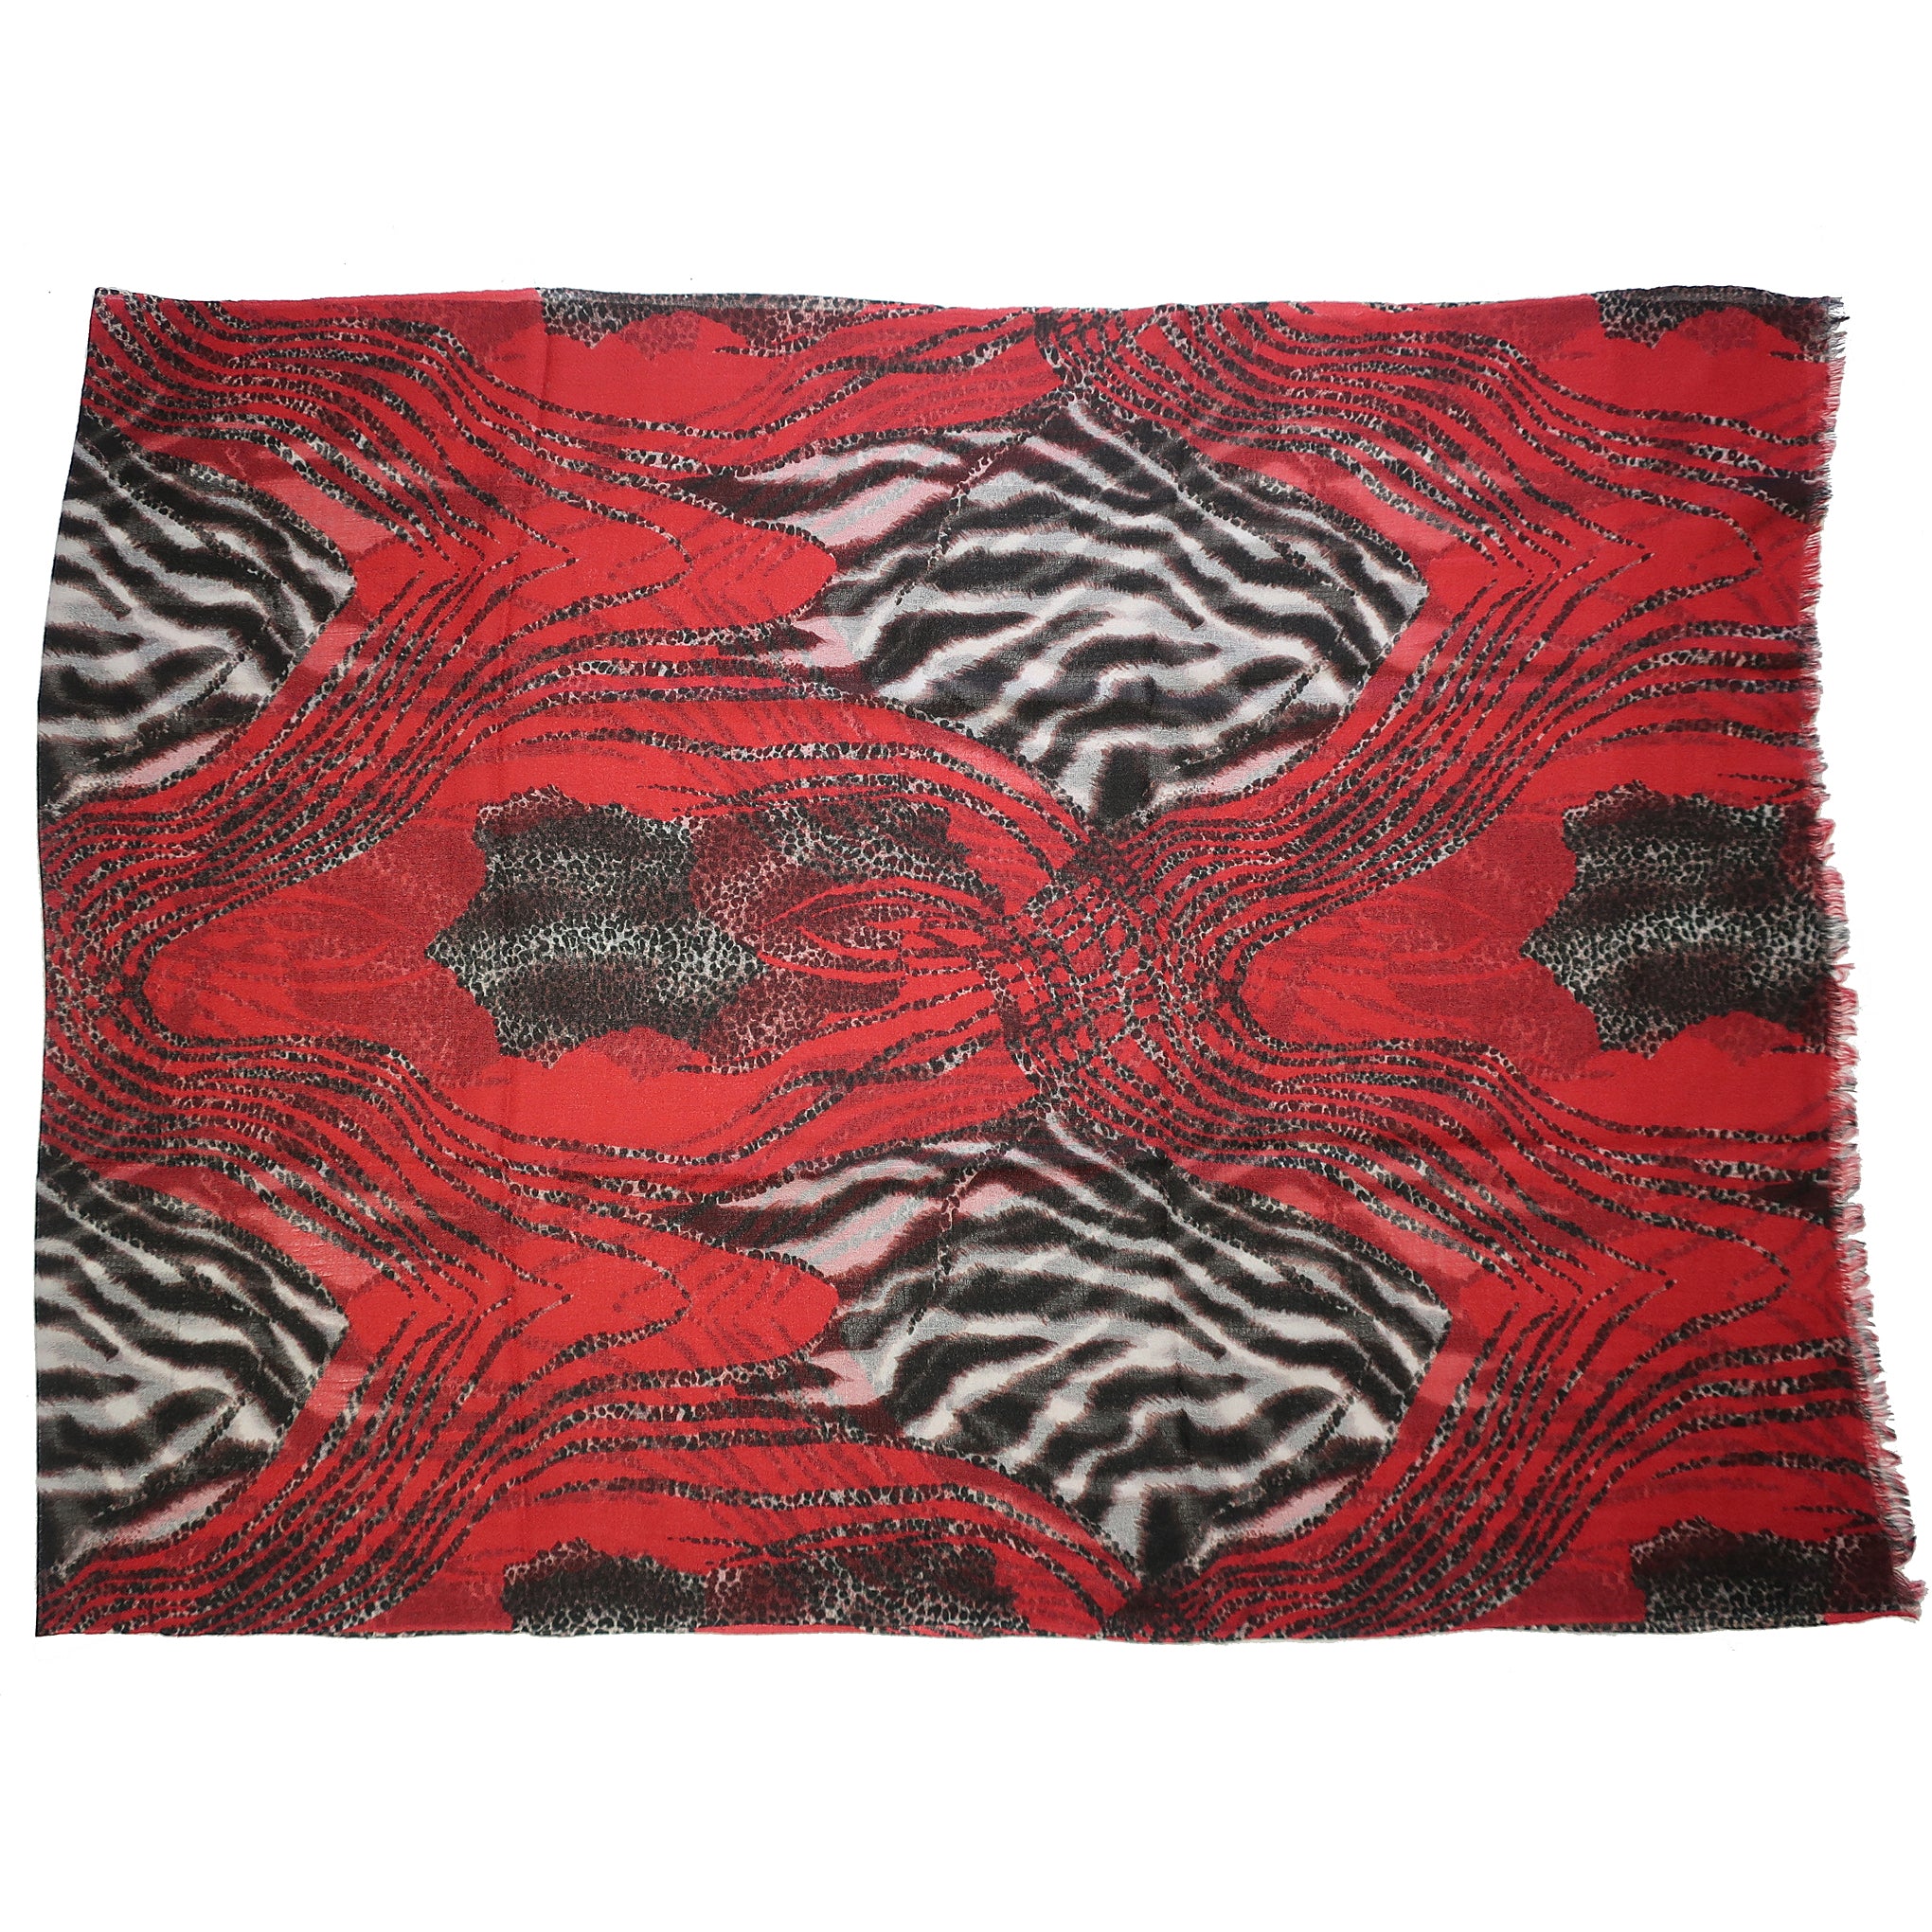 Blue Pacific Animal Safari Pure Cashmere Scarf in Crimson Red and Black